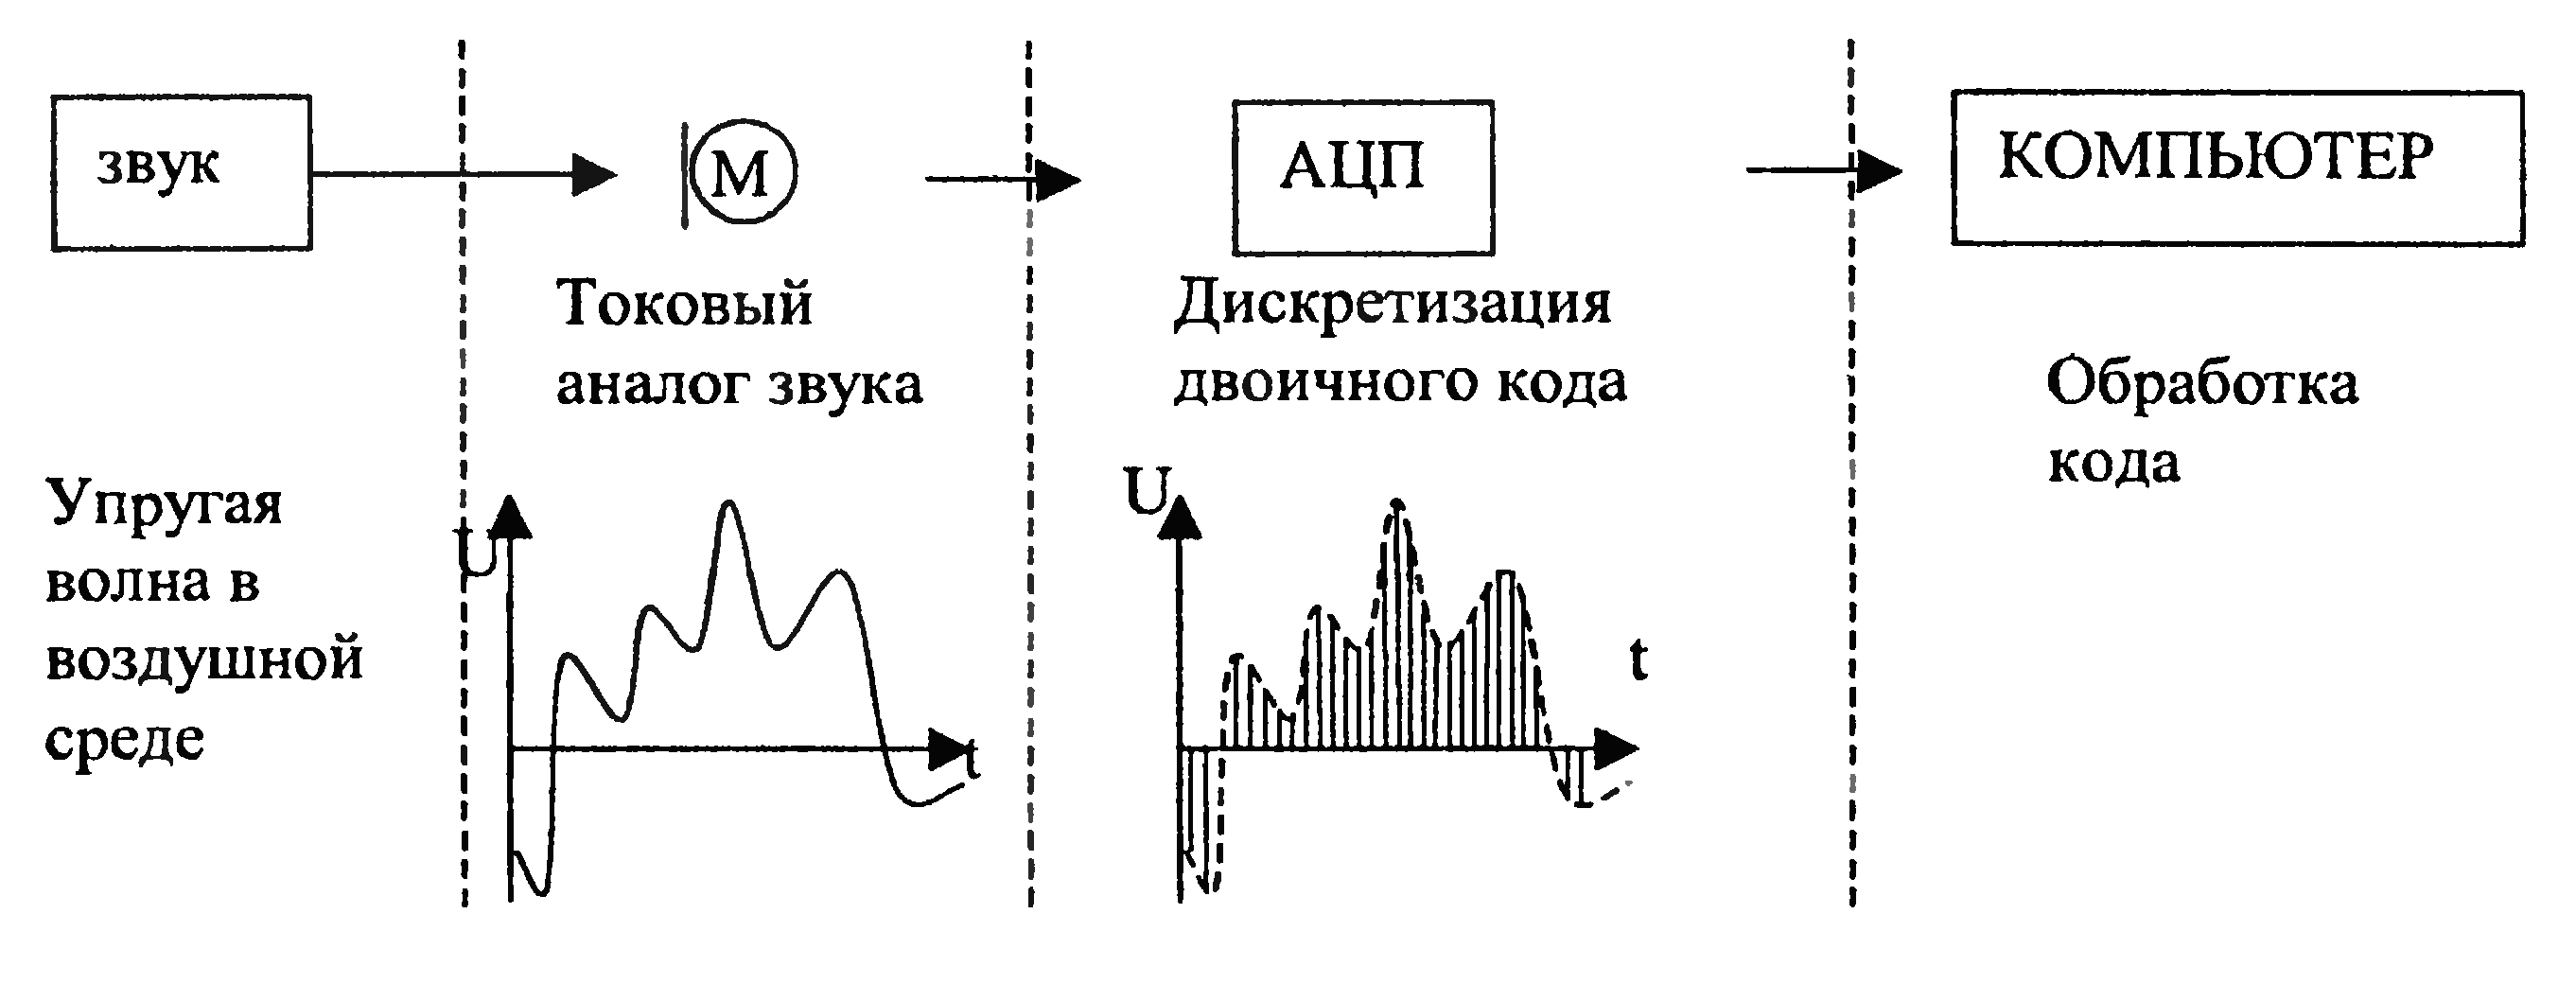 Аналоговая форма звука. Схема частотной обработки аналоговых сигналов. Кодирование аналогового звукового сигнала. Обработка звука схемы. Представление аналогового сигнала и дискретного схема.